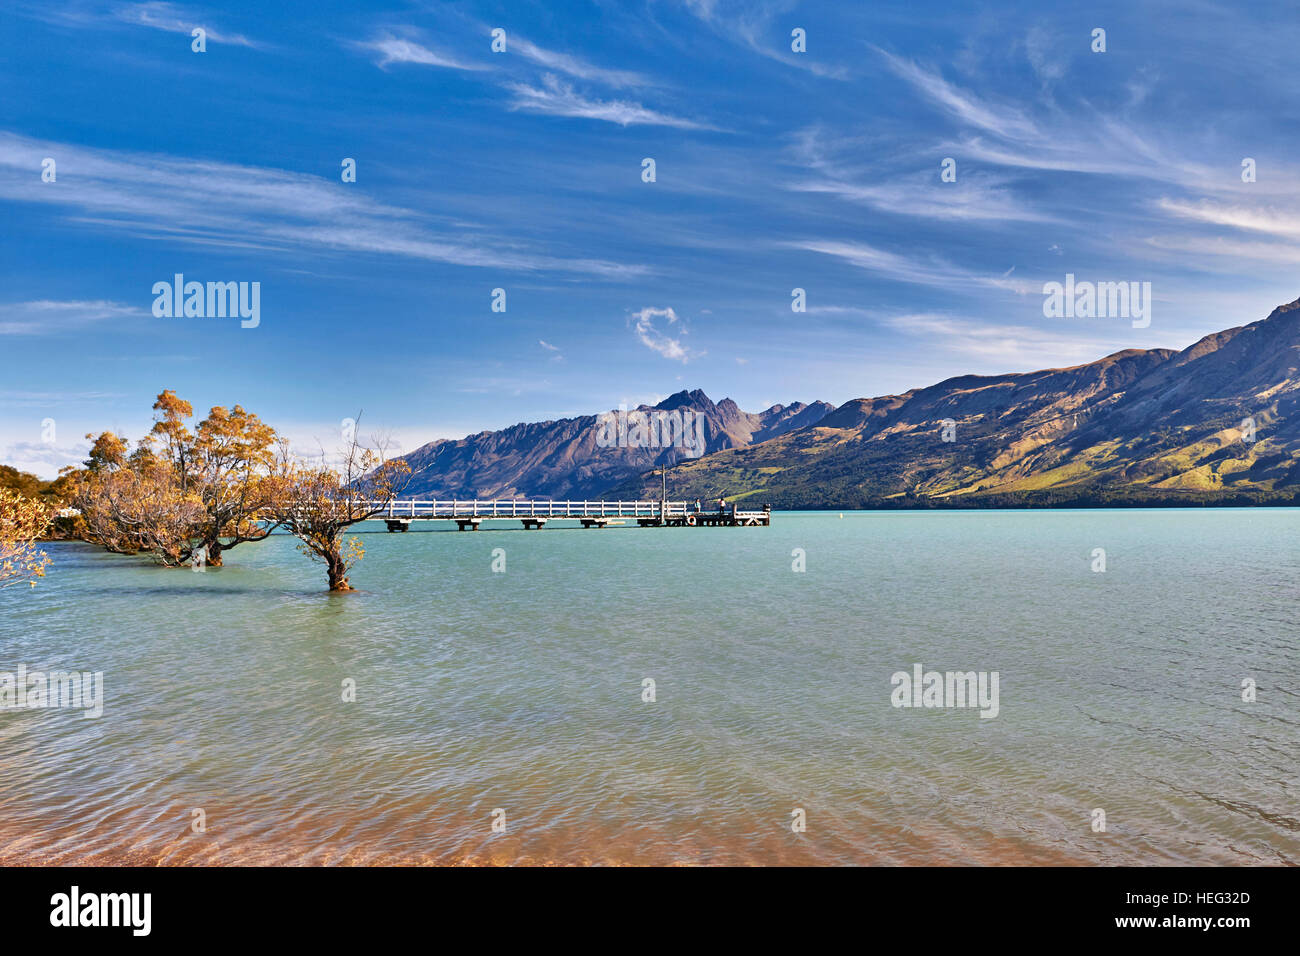 Neuseeland, SÃ¼dinsel, Glenorchy, langer Holzsteg fÃ¼hrt in See, Berge umranden, klares Wasser, malerisch, BÃ¤ume ragen aus Wasser Stock Photo